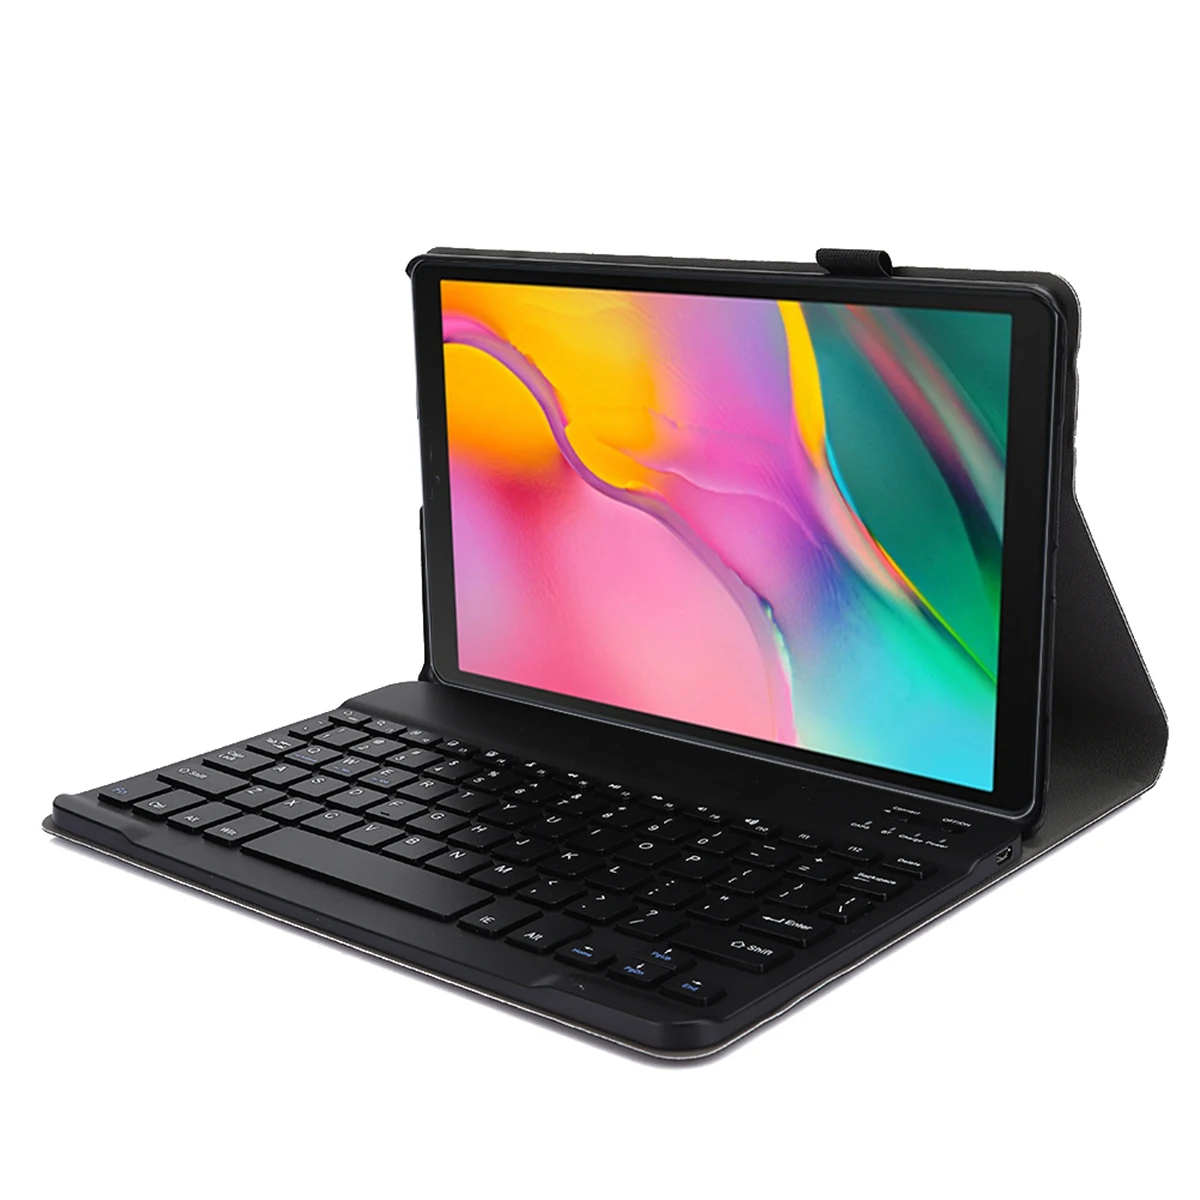 

Съемная клавиатура для планшета с защитным чехлом, подходит для планшета Samsung Tab A 10,1 2019 (черный)